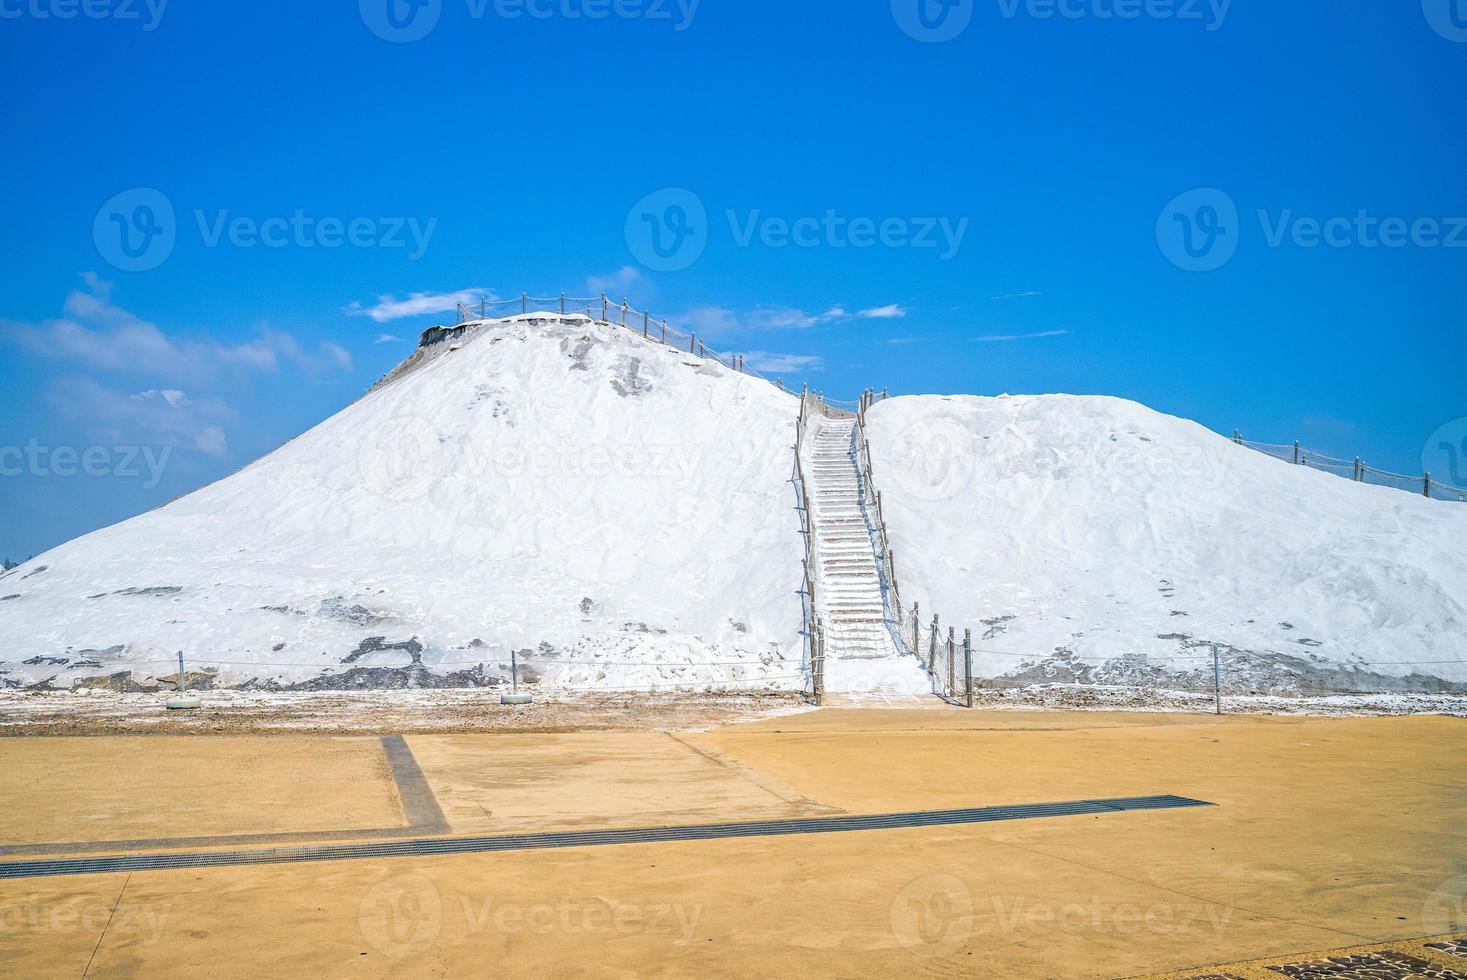 montagna di sale nella contea di cigu, tainan foto